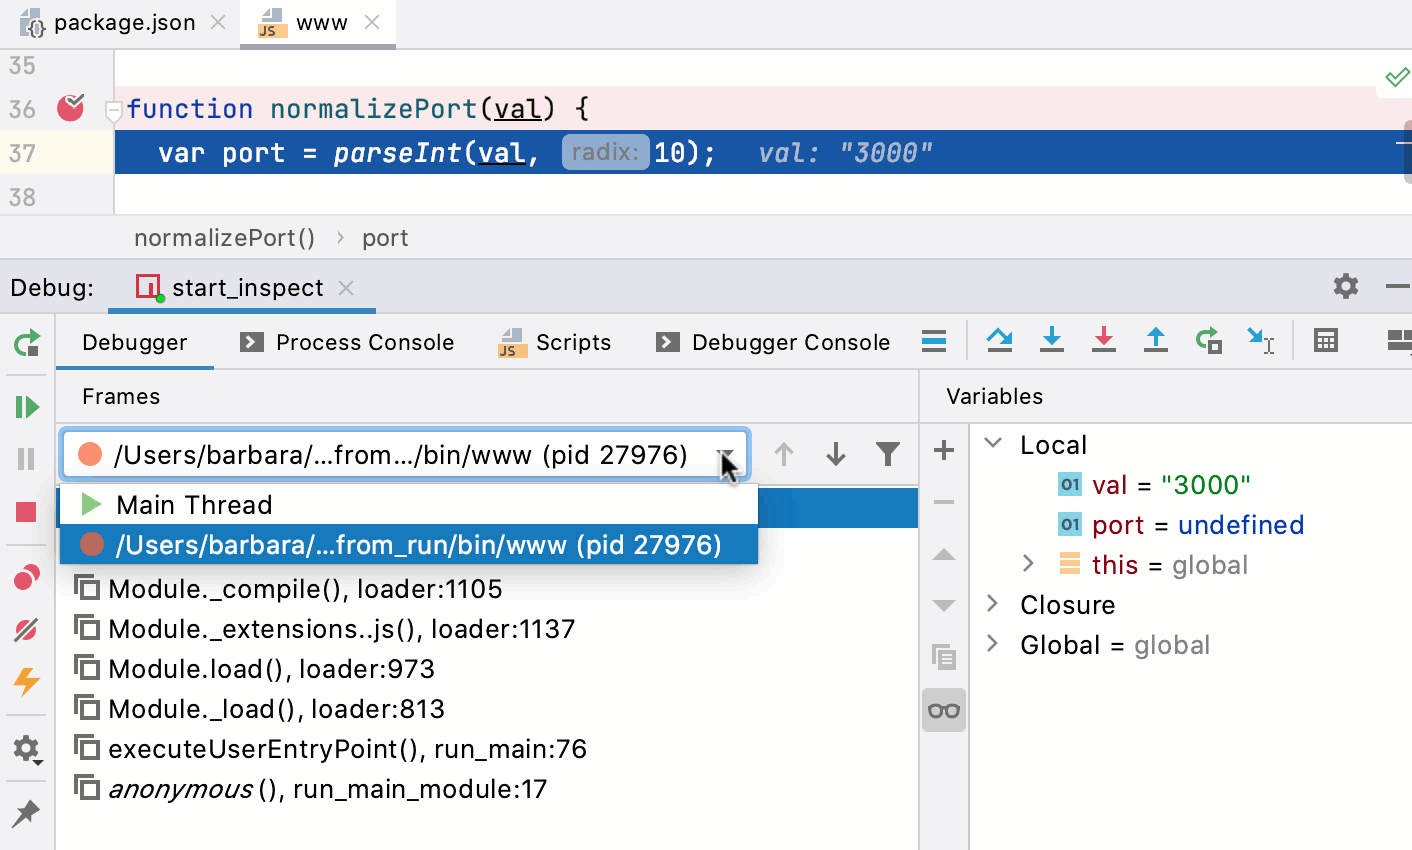 Debugging a script: Debug tool window